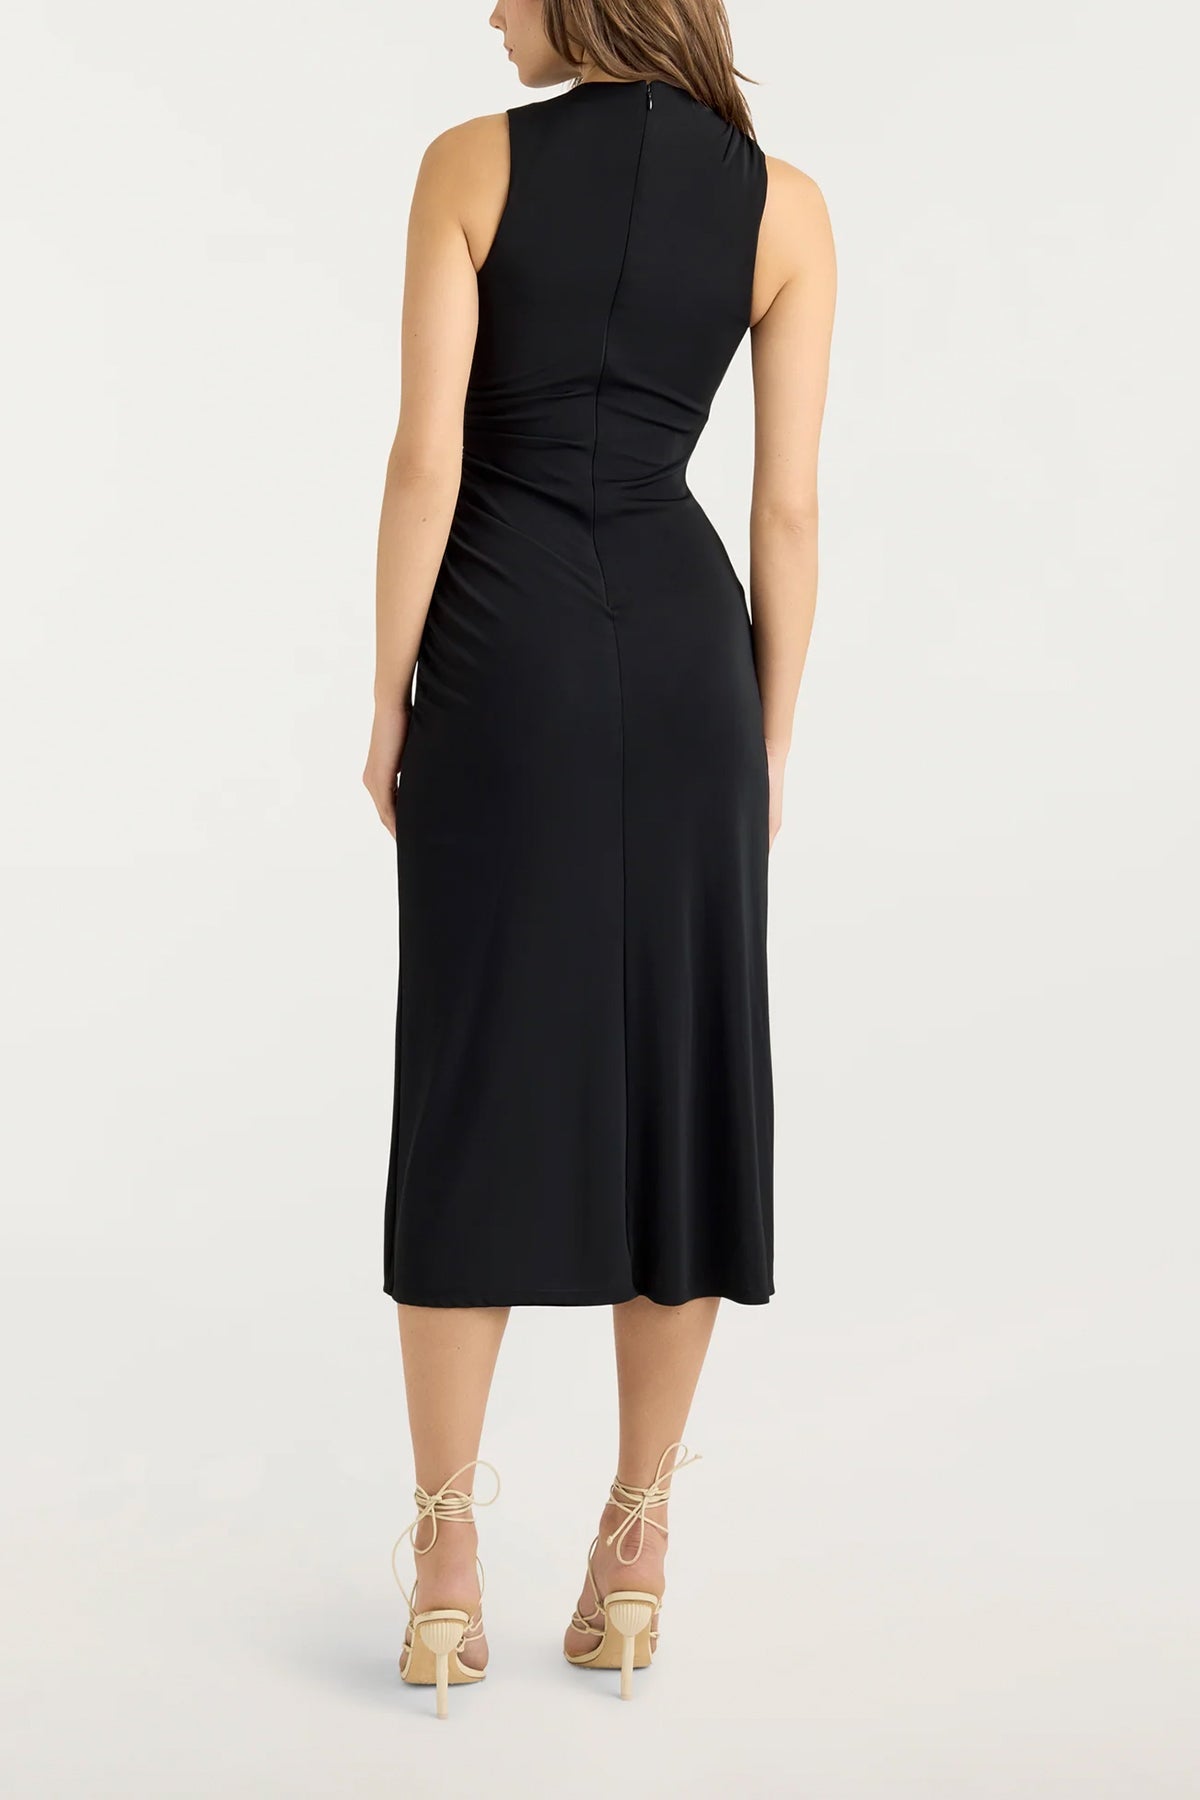 Wesson Dress in Black - shop-olivia.com